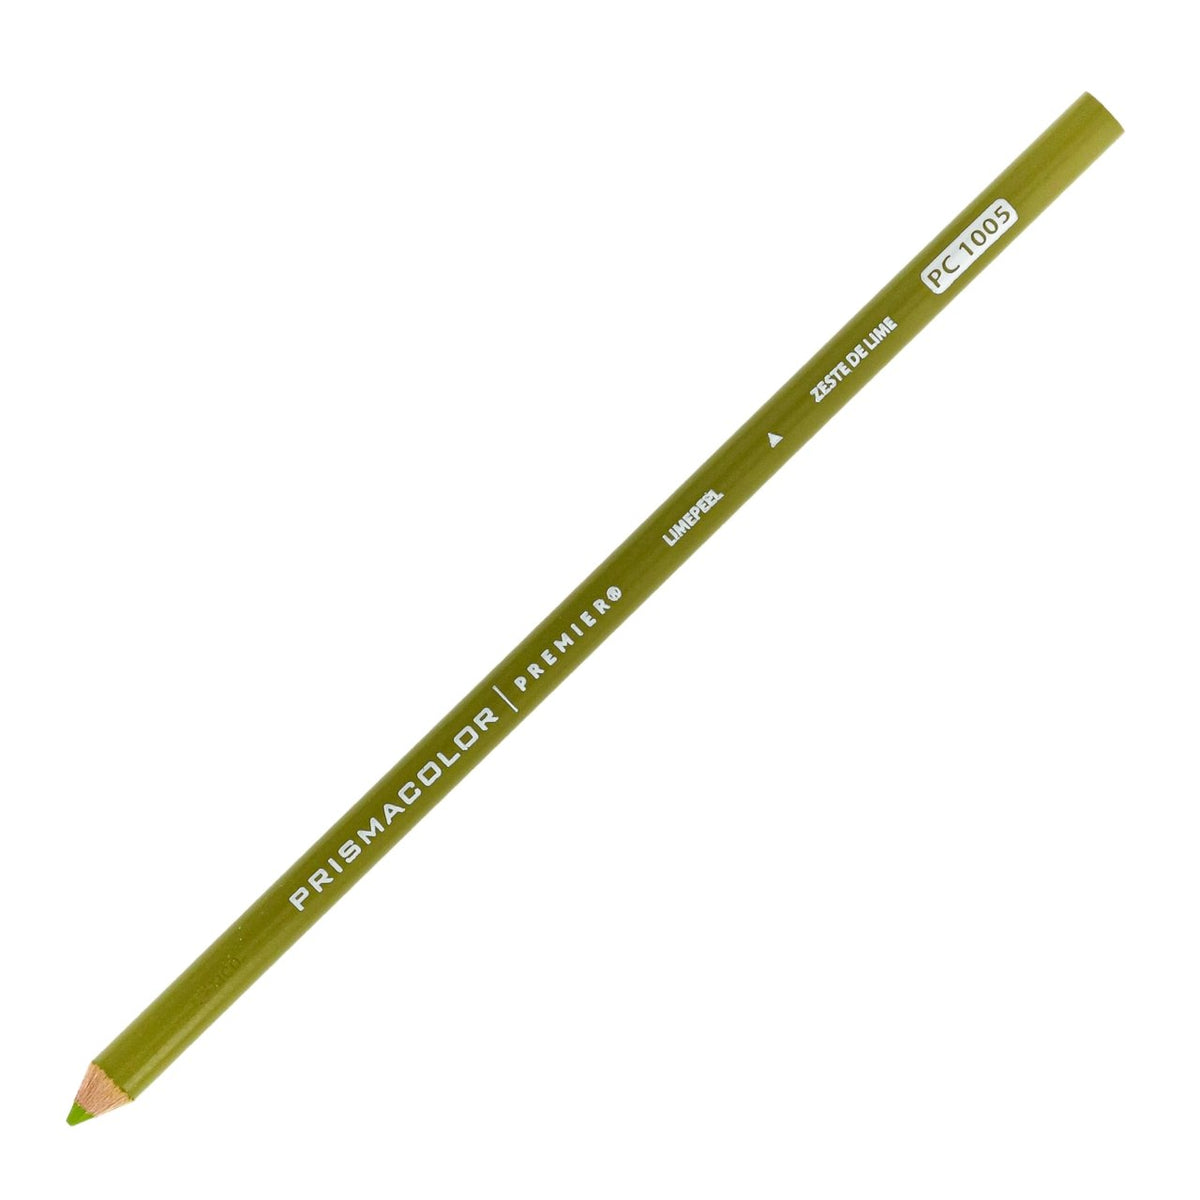 Kutsuwa Lead Adjustable Pencil Sharpener, Angle (T'GAAL)